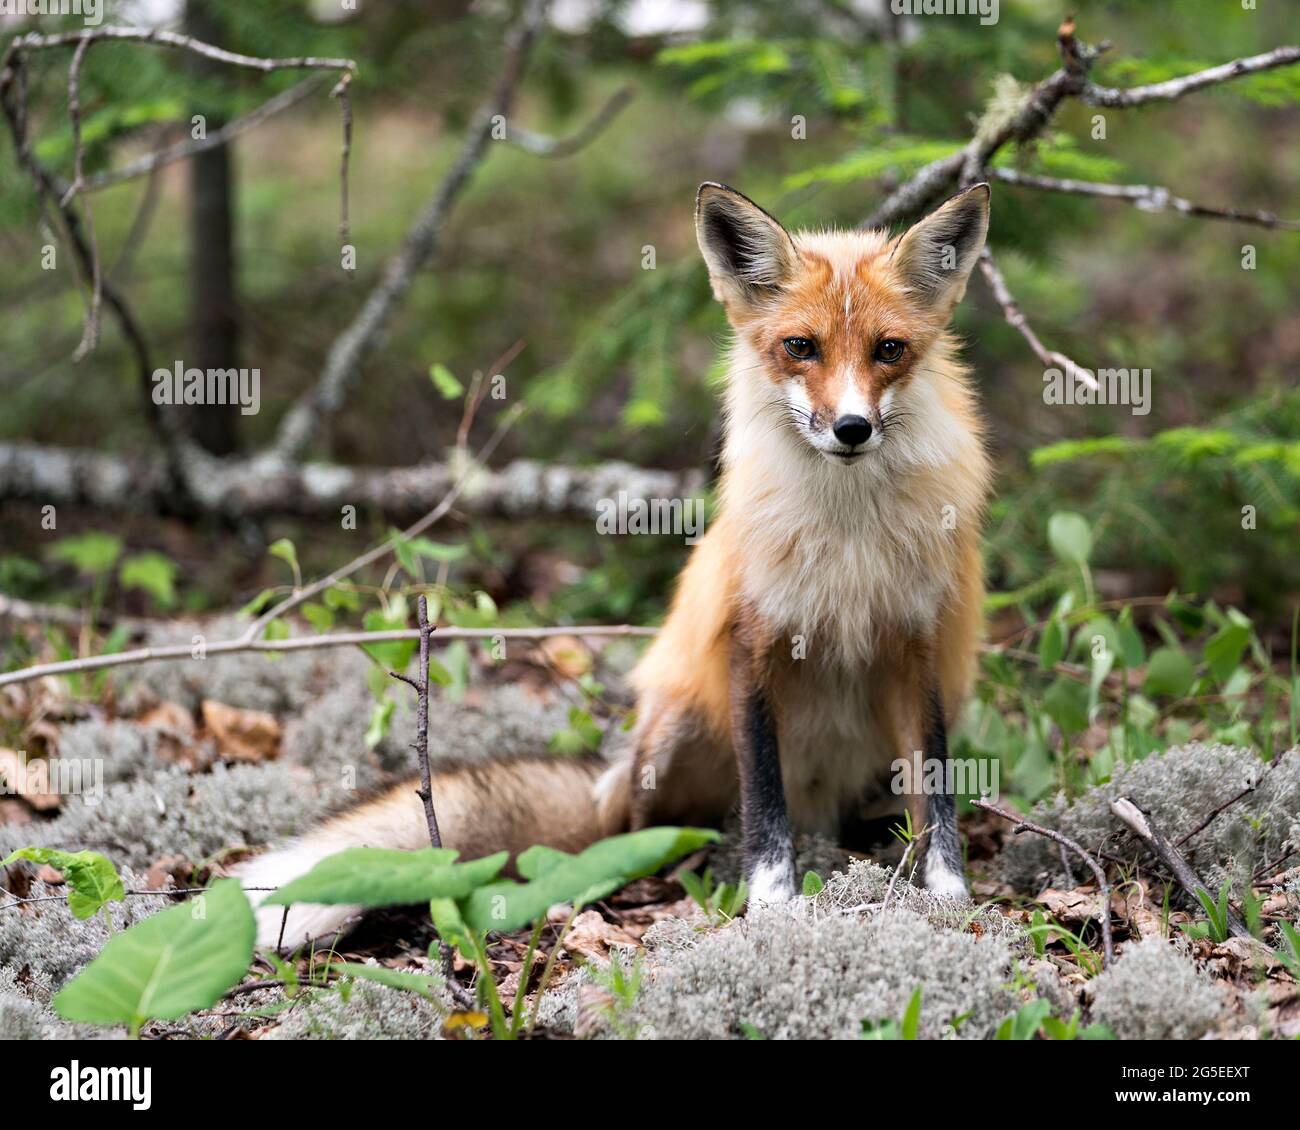 Vista del profilo in primo piano della volpe rossa seduta su muschio bianco e guardando la fotocamera con uno sfondo di foresta sfocata nel suo ambiente e habitat. Immagine FOX. Fig Foto Stock